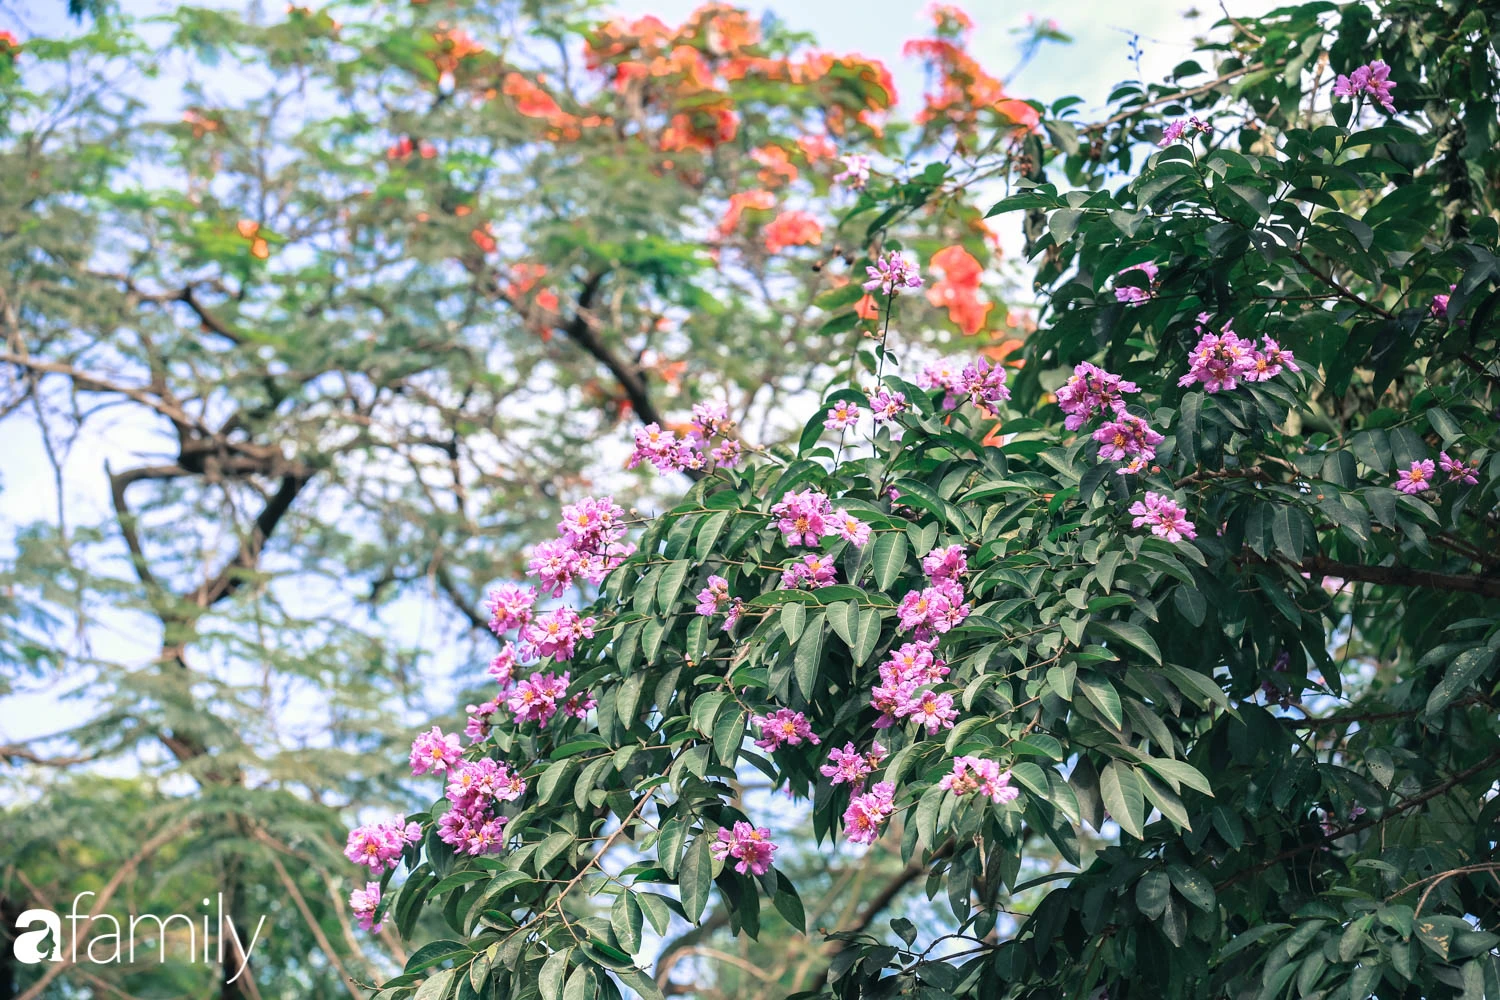 Trở lại cuộc sống bộn bề như trước, có mấy ai nhận ra Hà Nội đang trong một mùa hoa bằng lăng đẹp tuyệt vời - Ảnh 4.